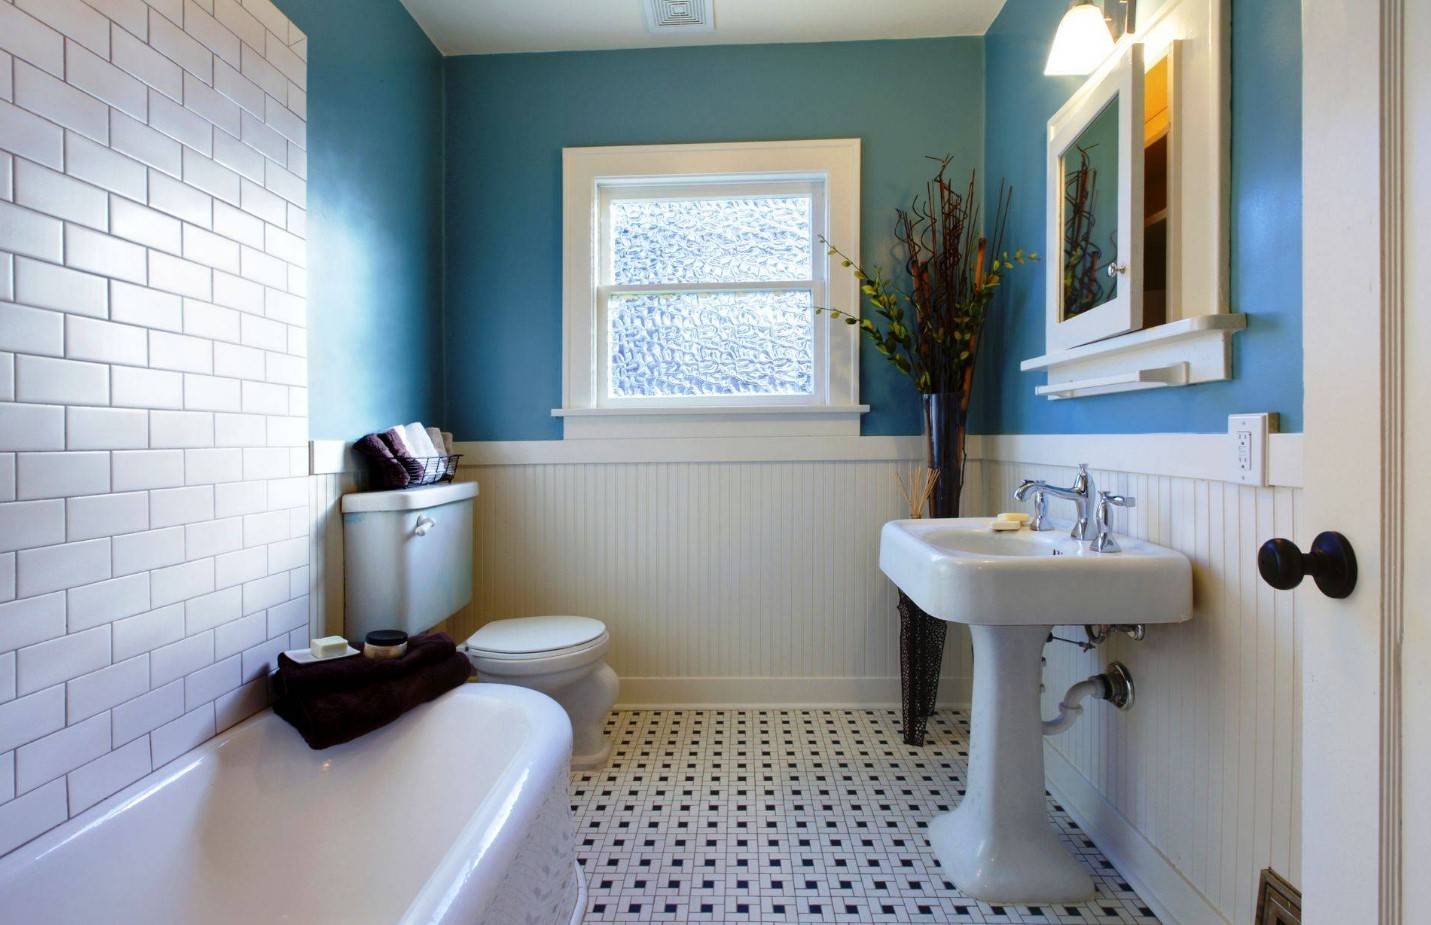 Чем отделать стены в ванной комнате кроме плитки - идеи